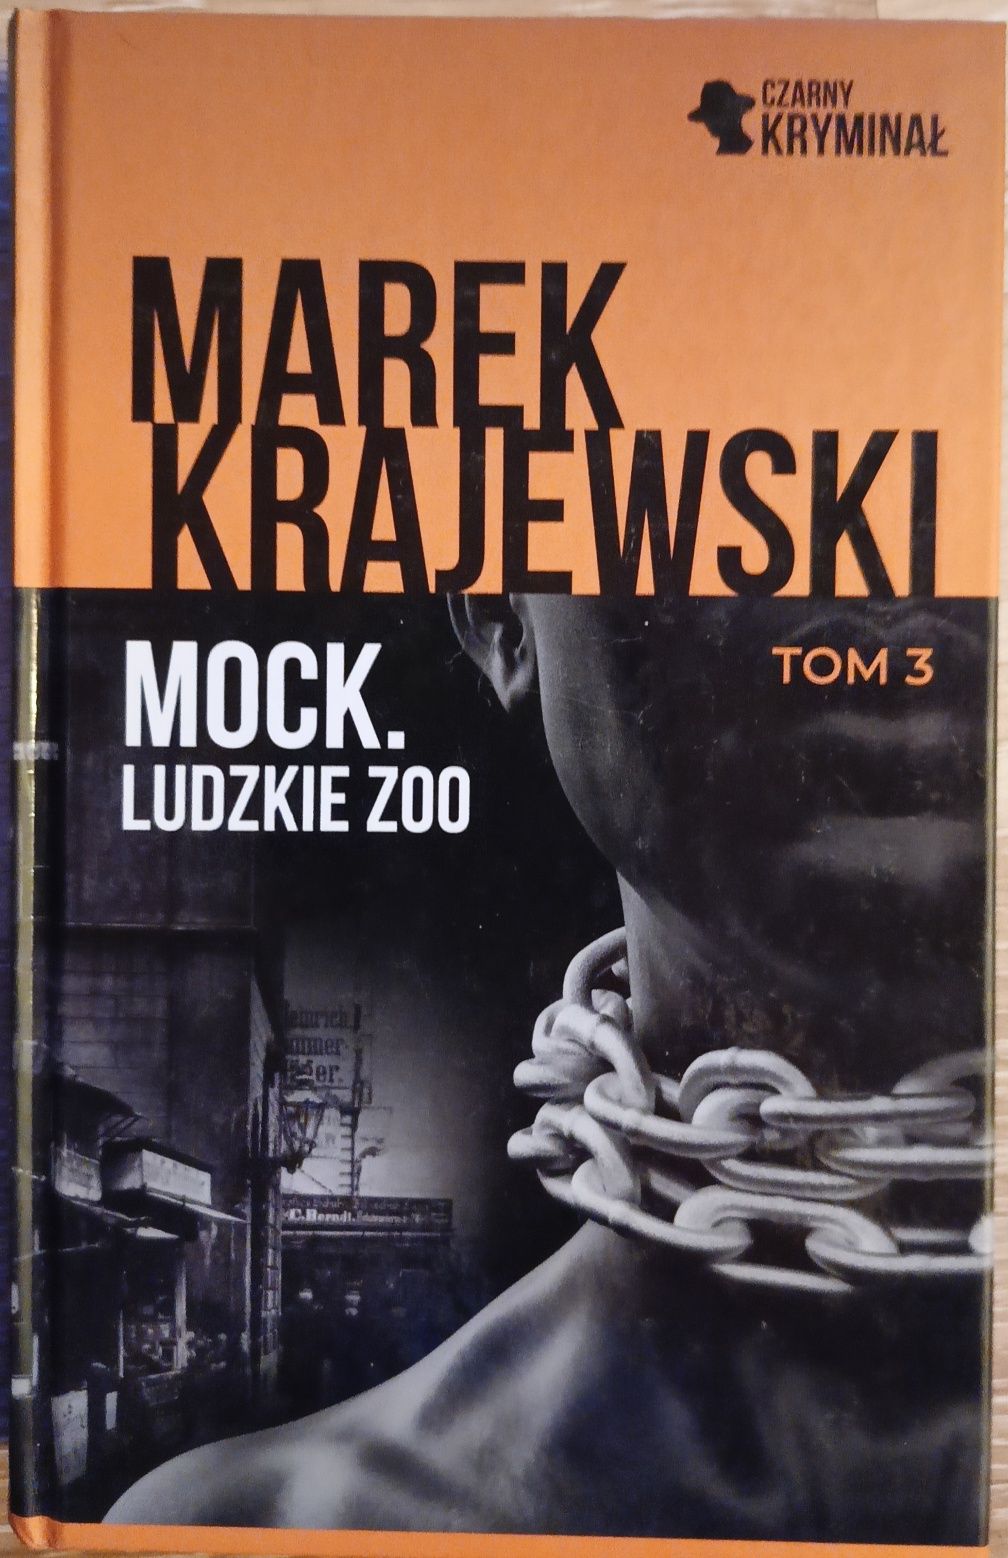 Mock Ludzkie Zoo " Marek Krajewski